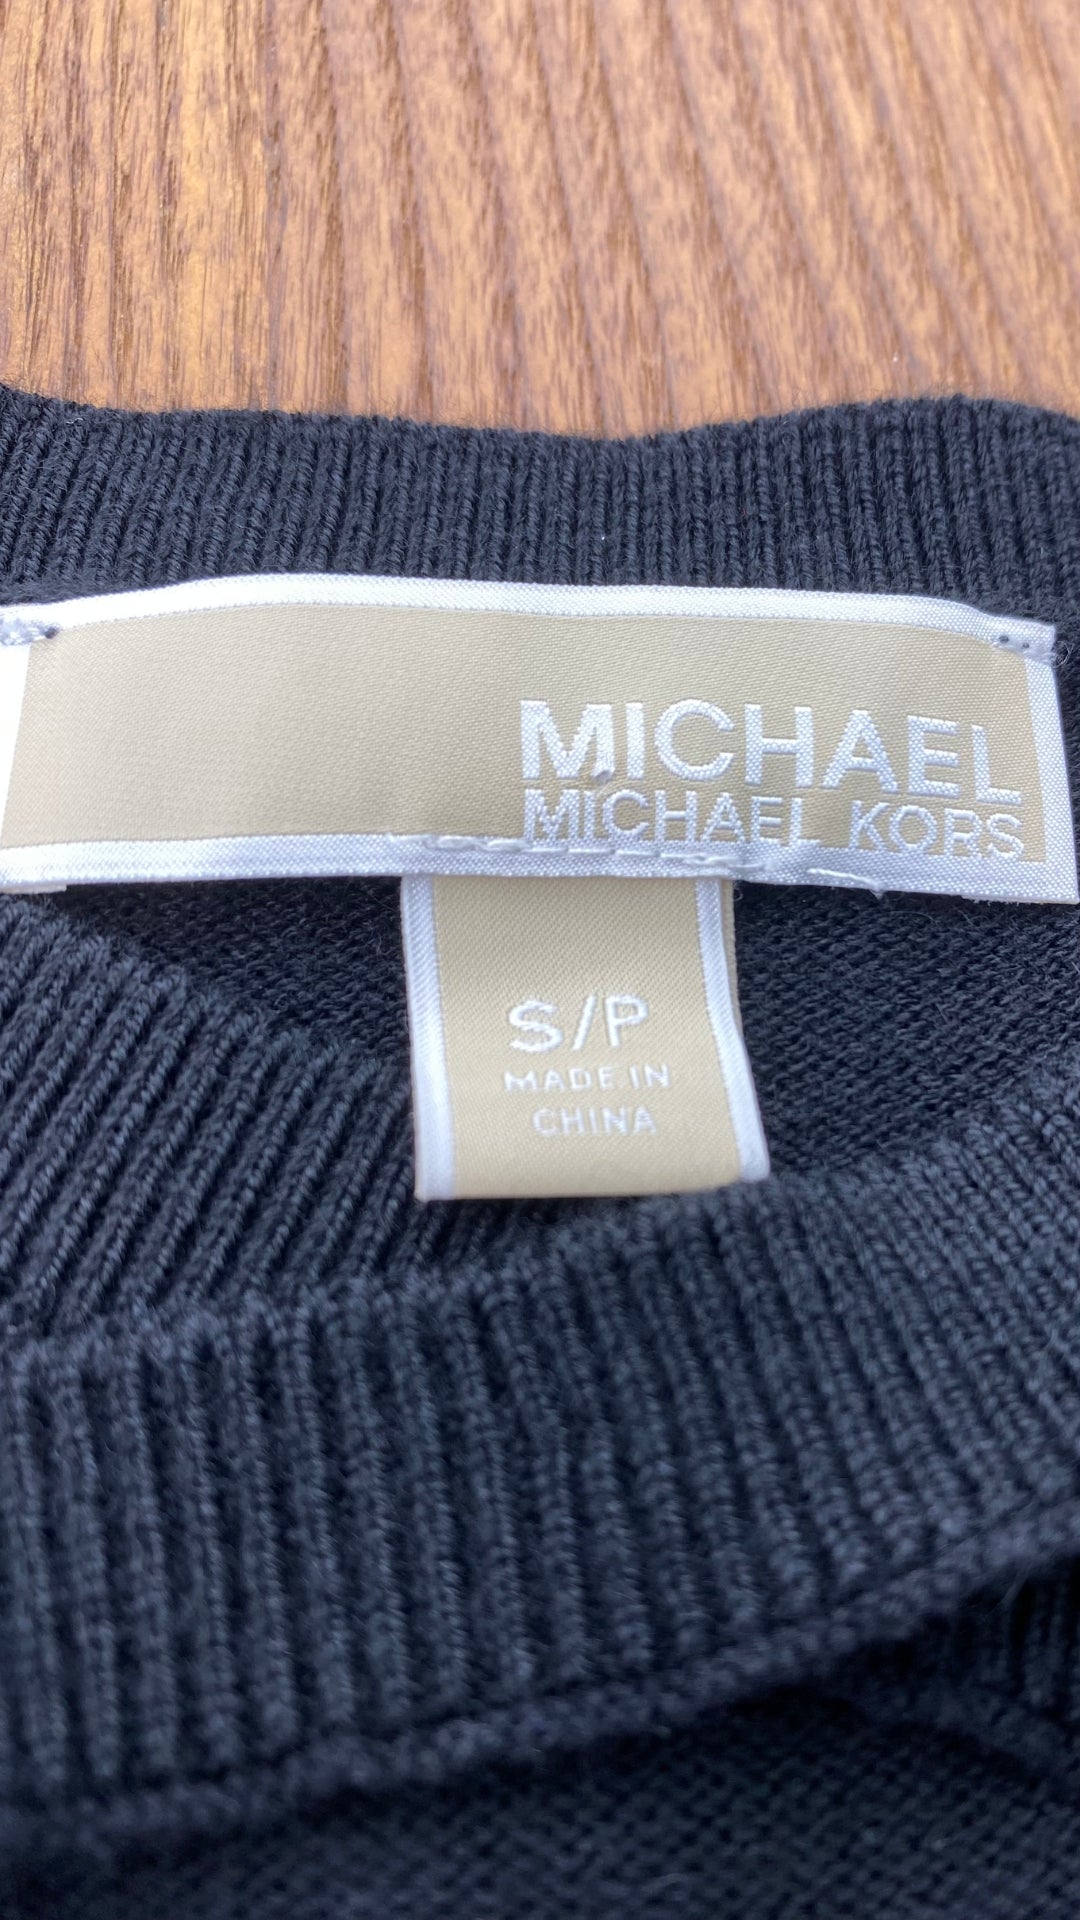 Chandail noir en tricot à encolure à ouvertures majestueuses Michael Kors, taille small. Vue de l'étiquette de marque et taille.